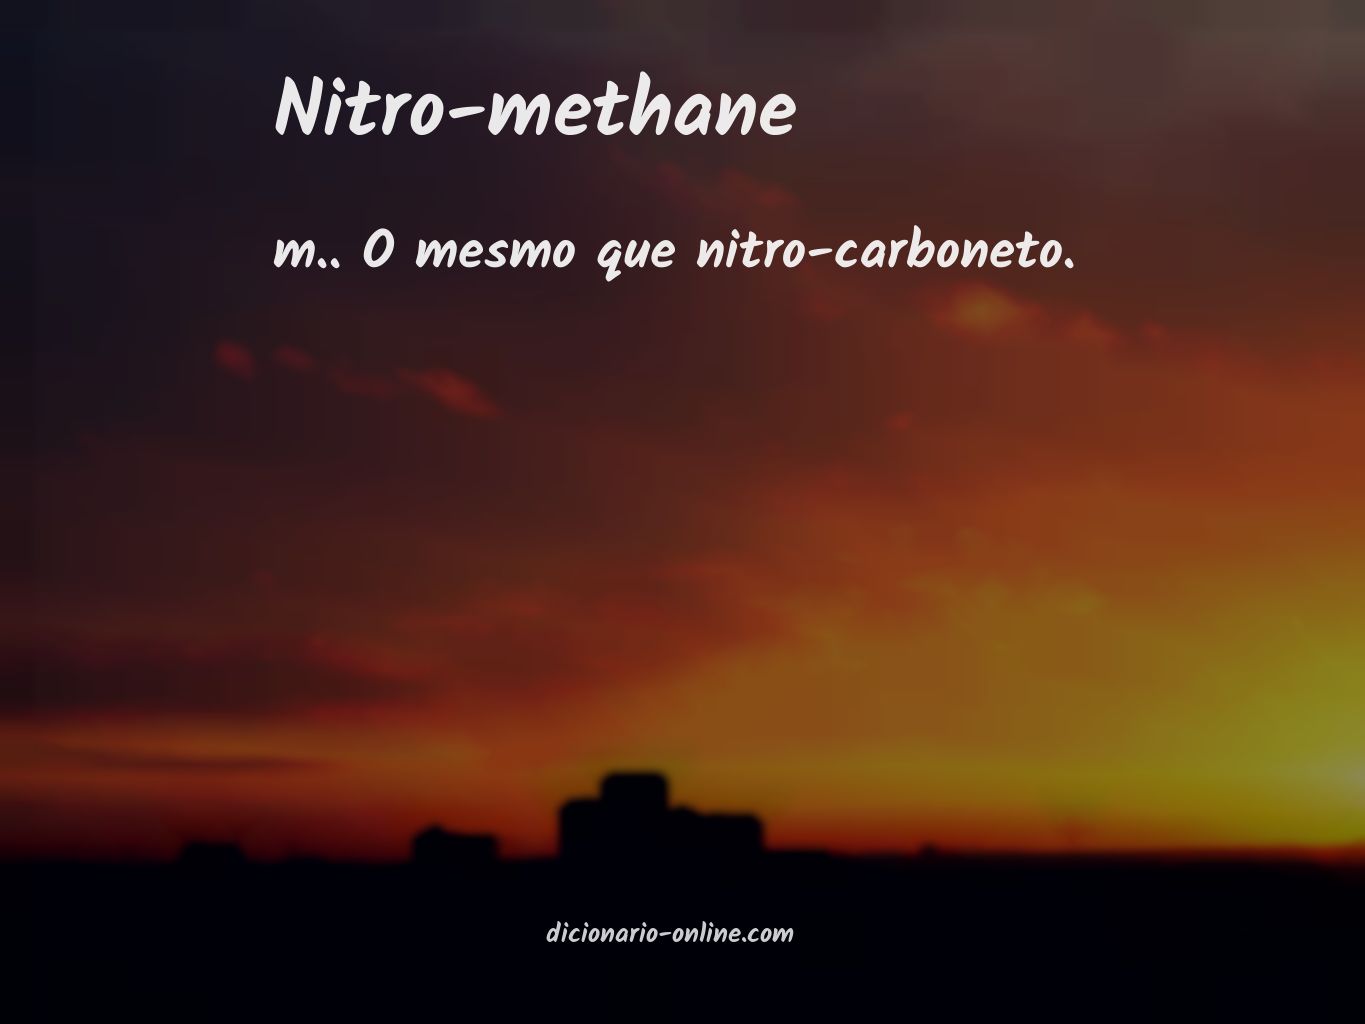 Significado de nitro-methane